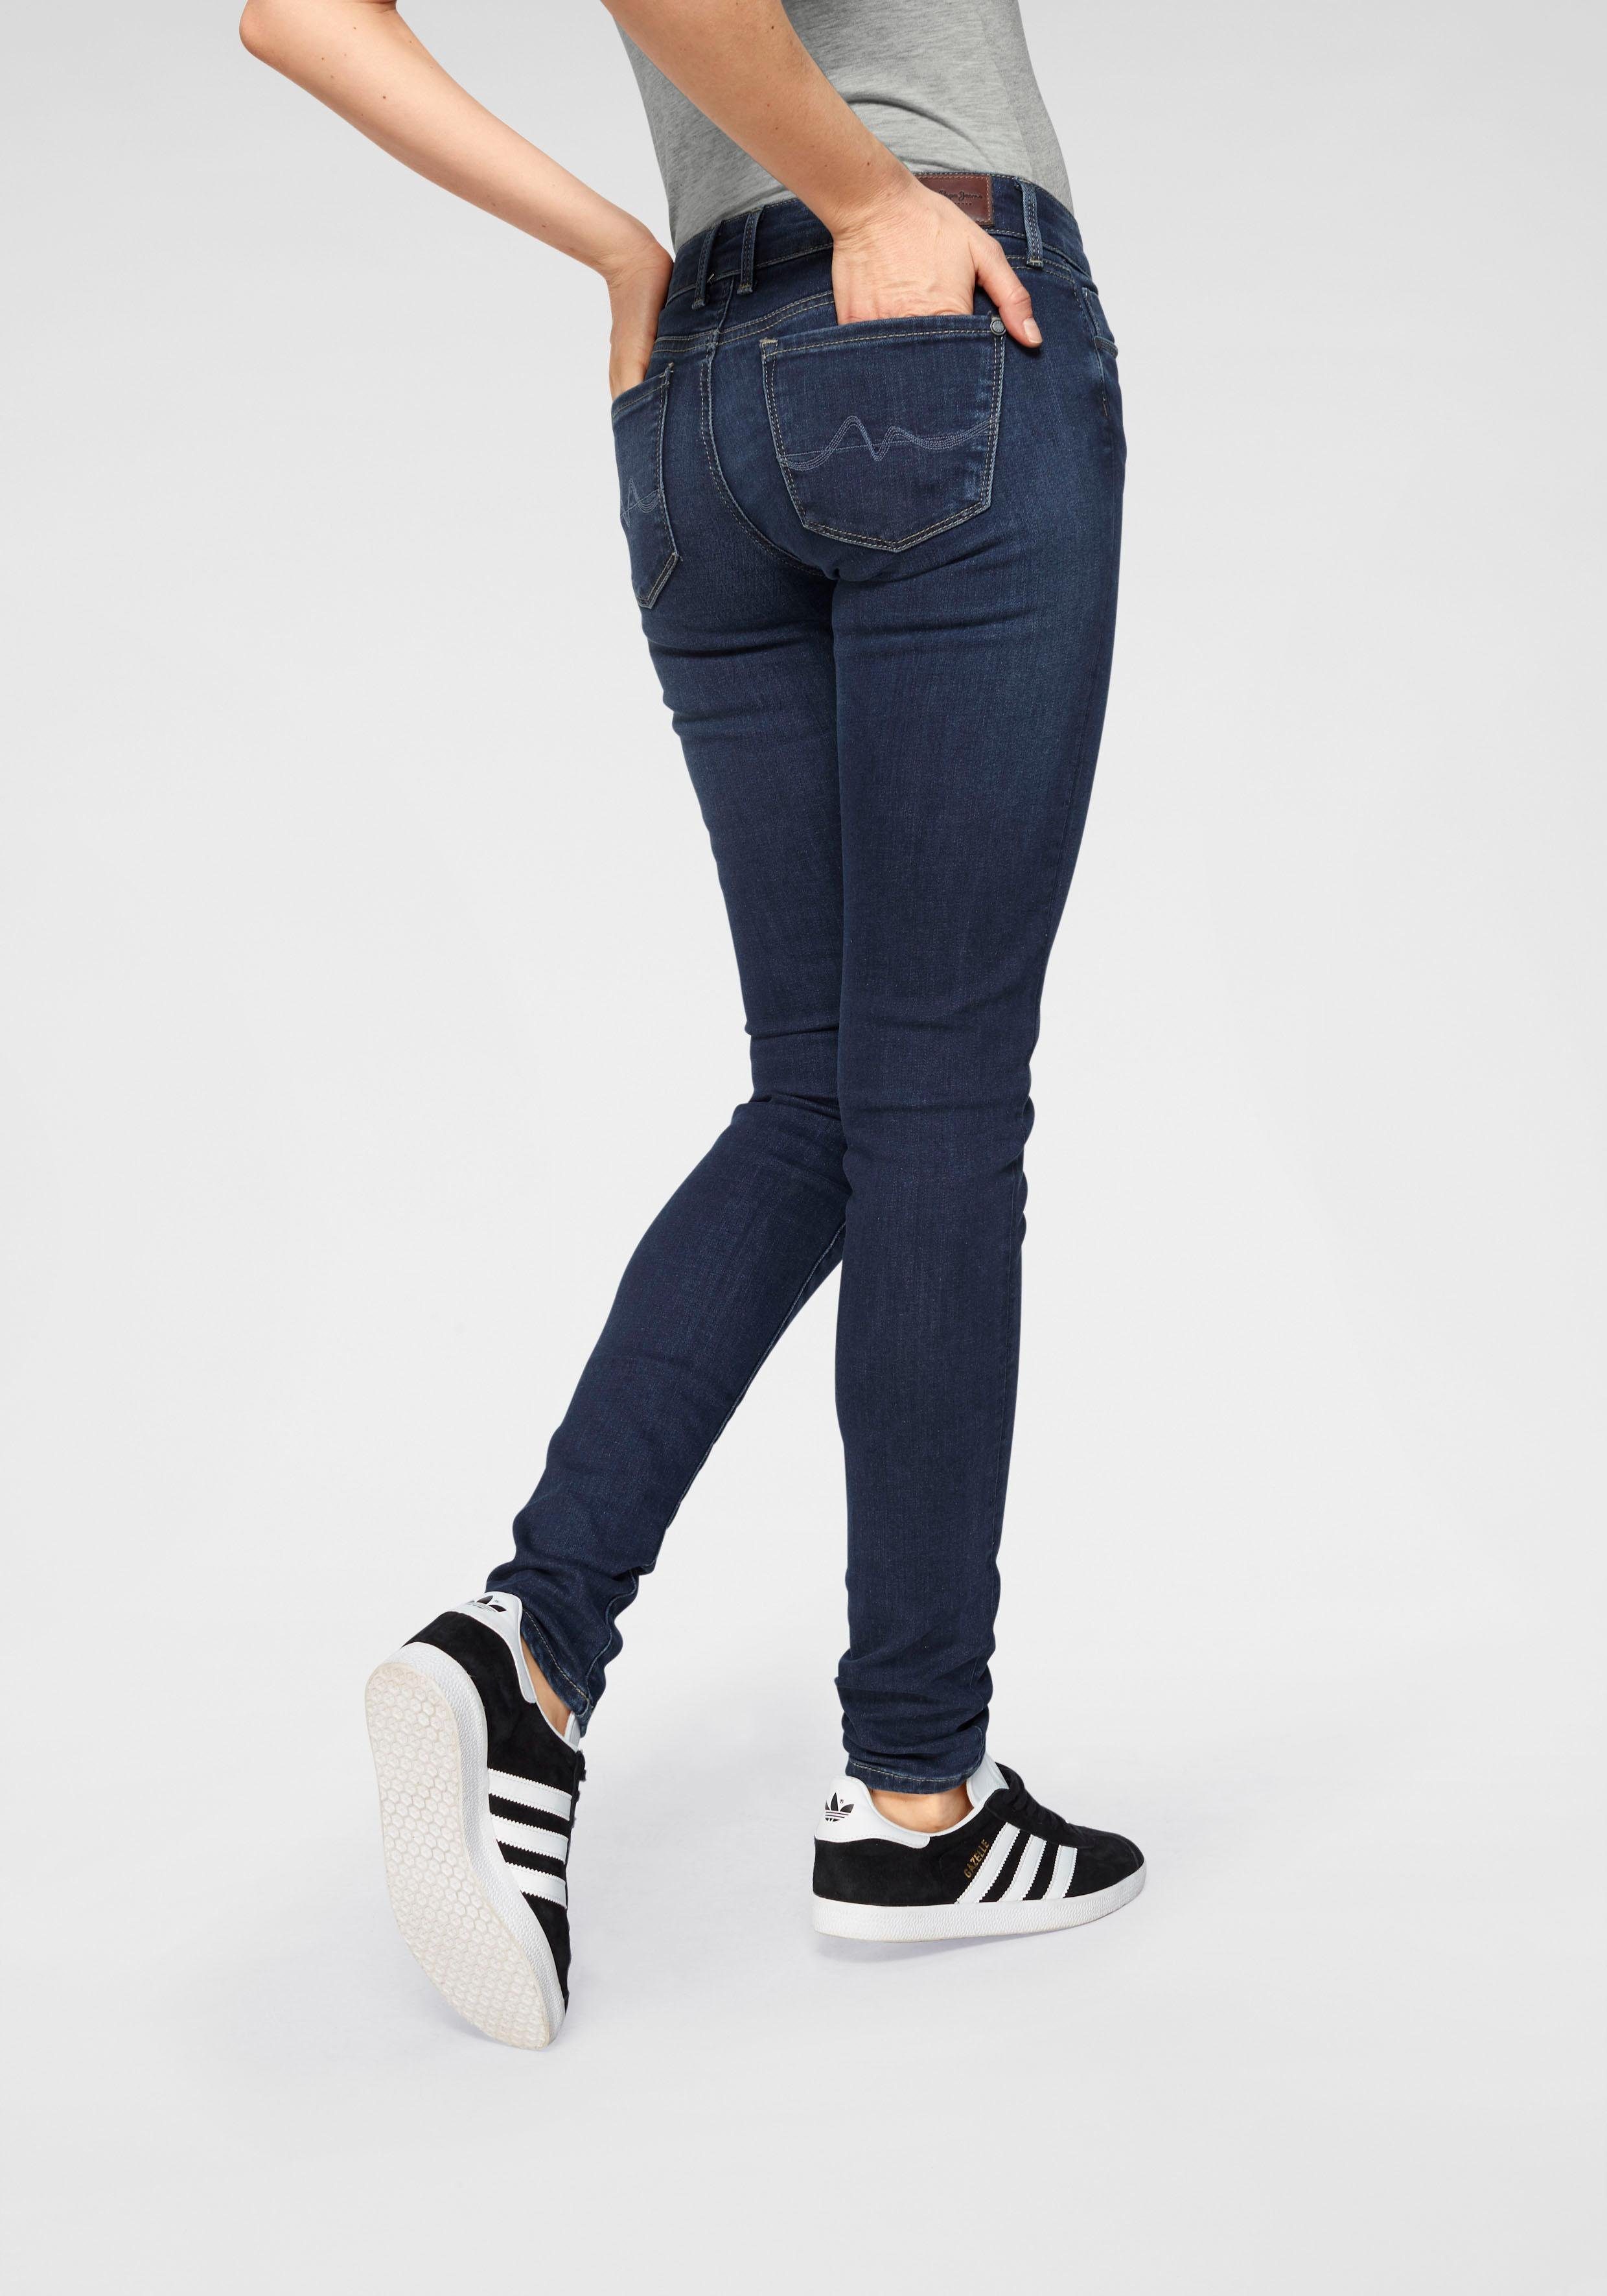 Jeans SOHO used dark worn und im Skinny-fit-Jeans 5-Pocket-Stil 1-Knopf Stretch-Anteil H45 Bund mit Pepe